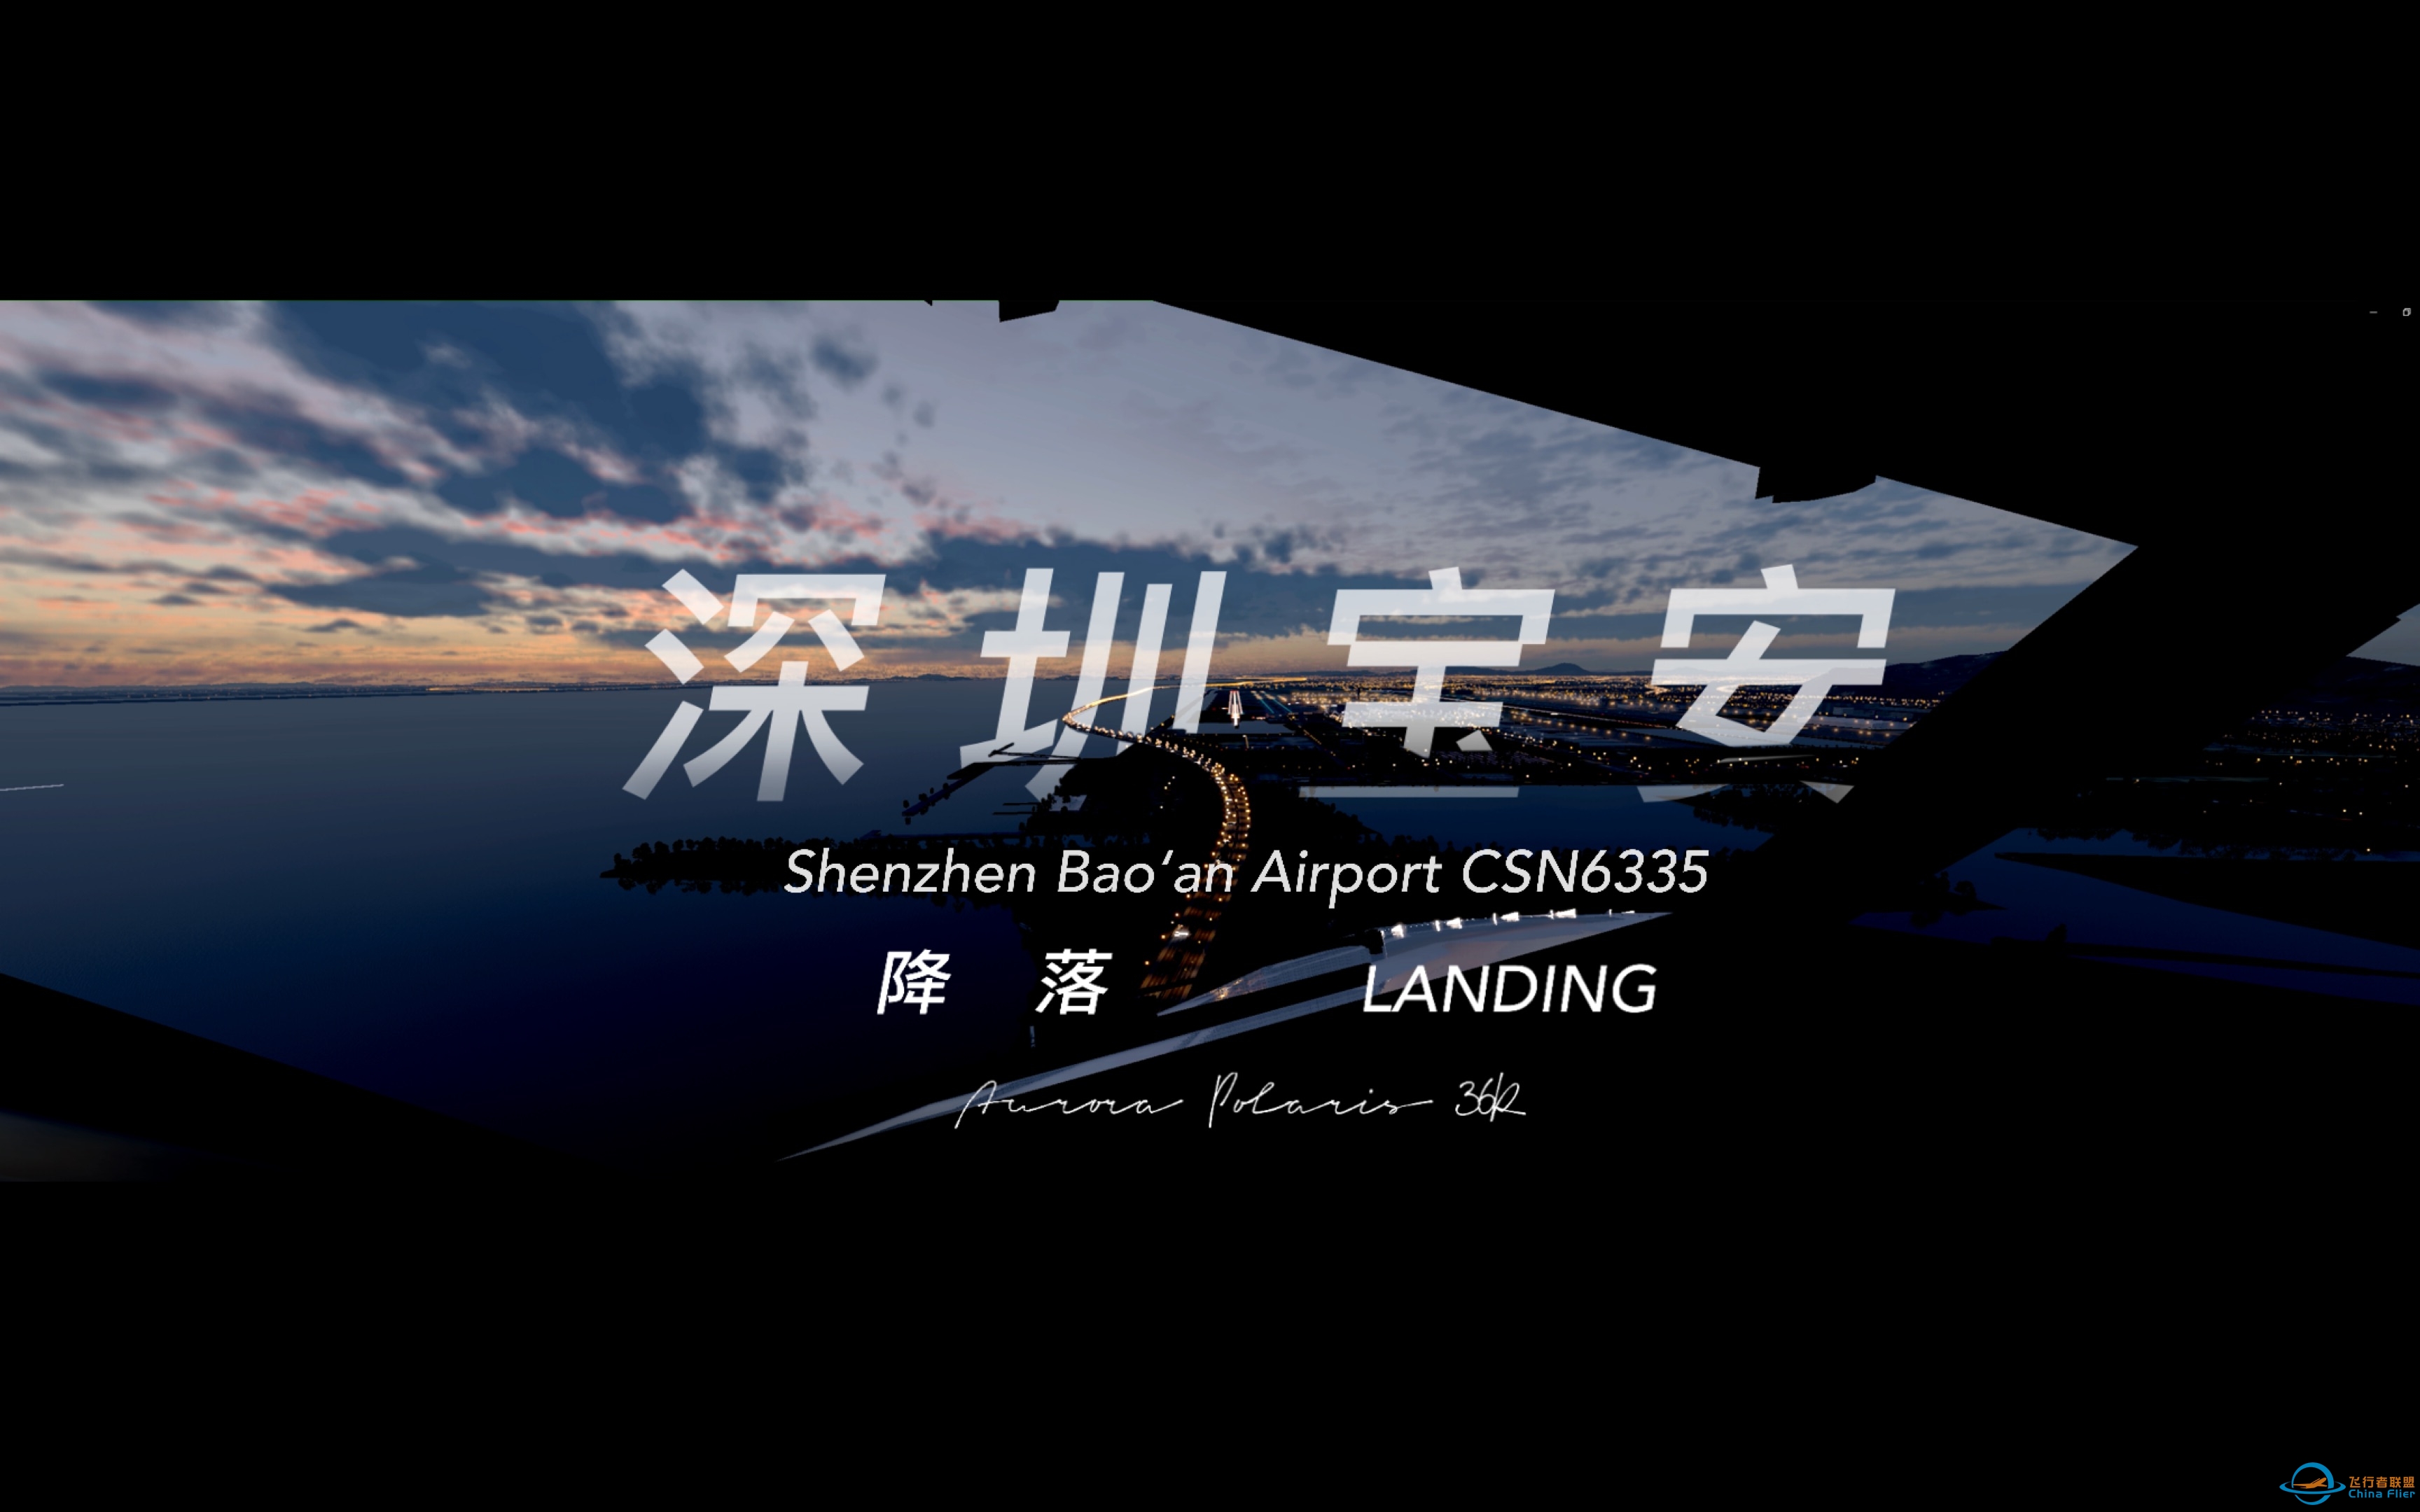 [XPlane12] 中国南方航空737降落于深圳宝安国际机场-7748 